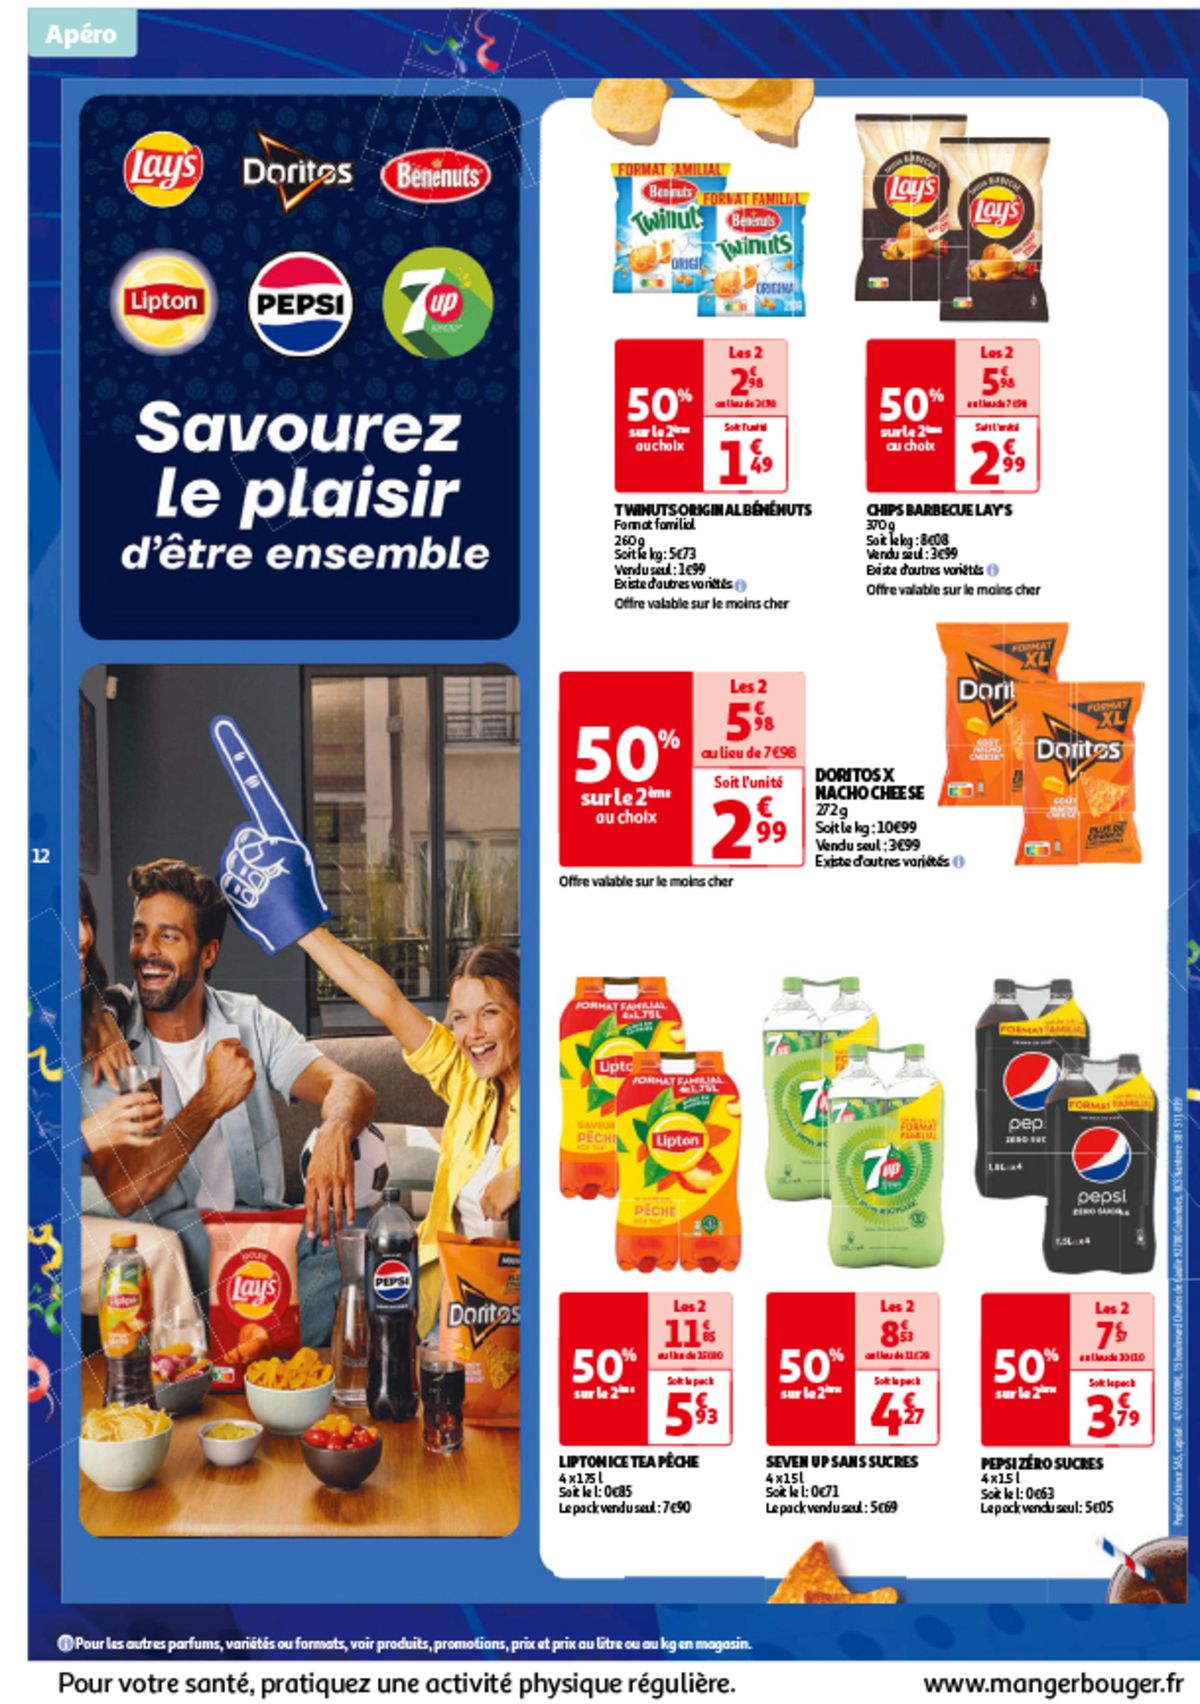 Catalogue Les 7 jours Auchan, c'est maintenant !, page 00012